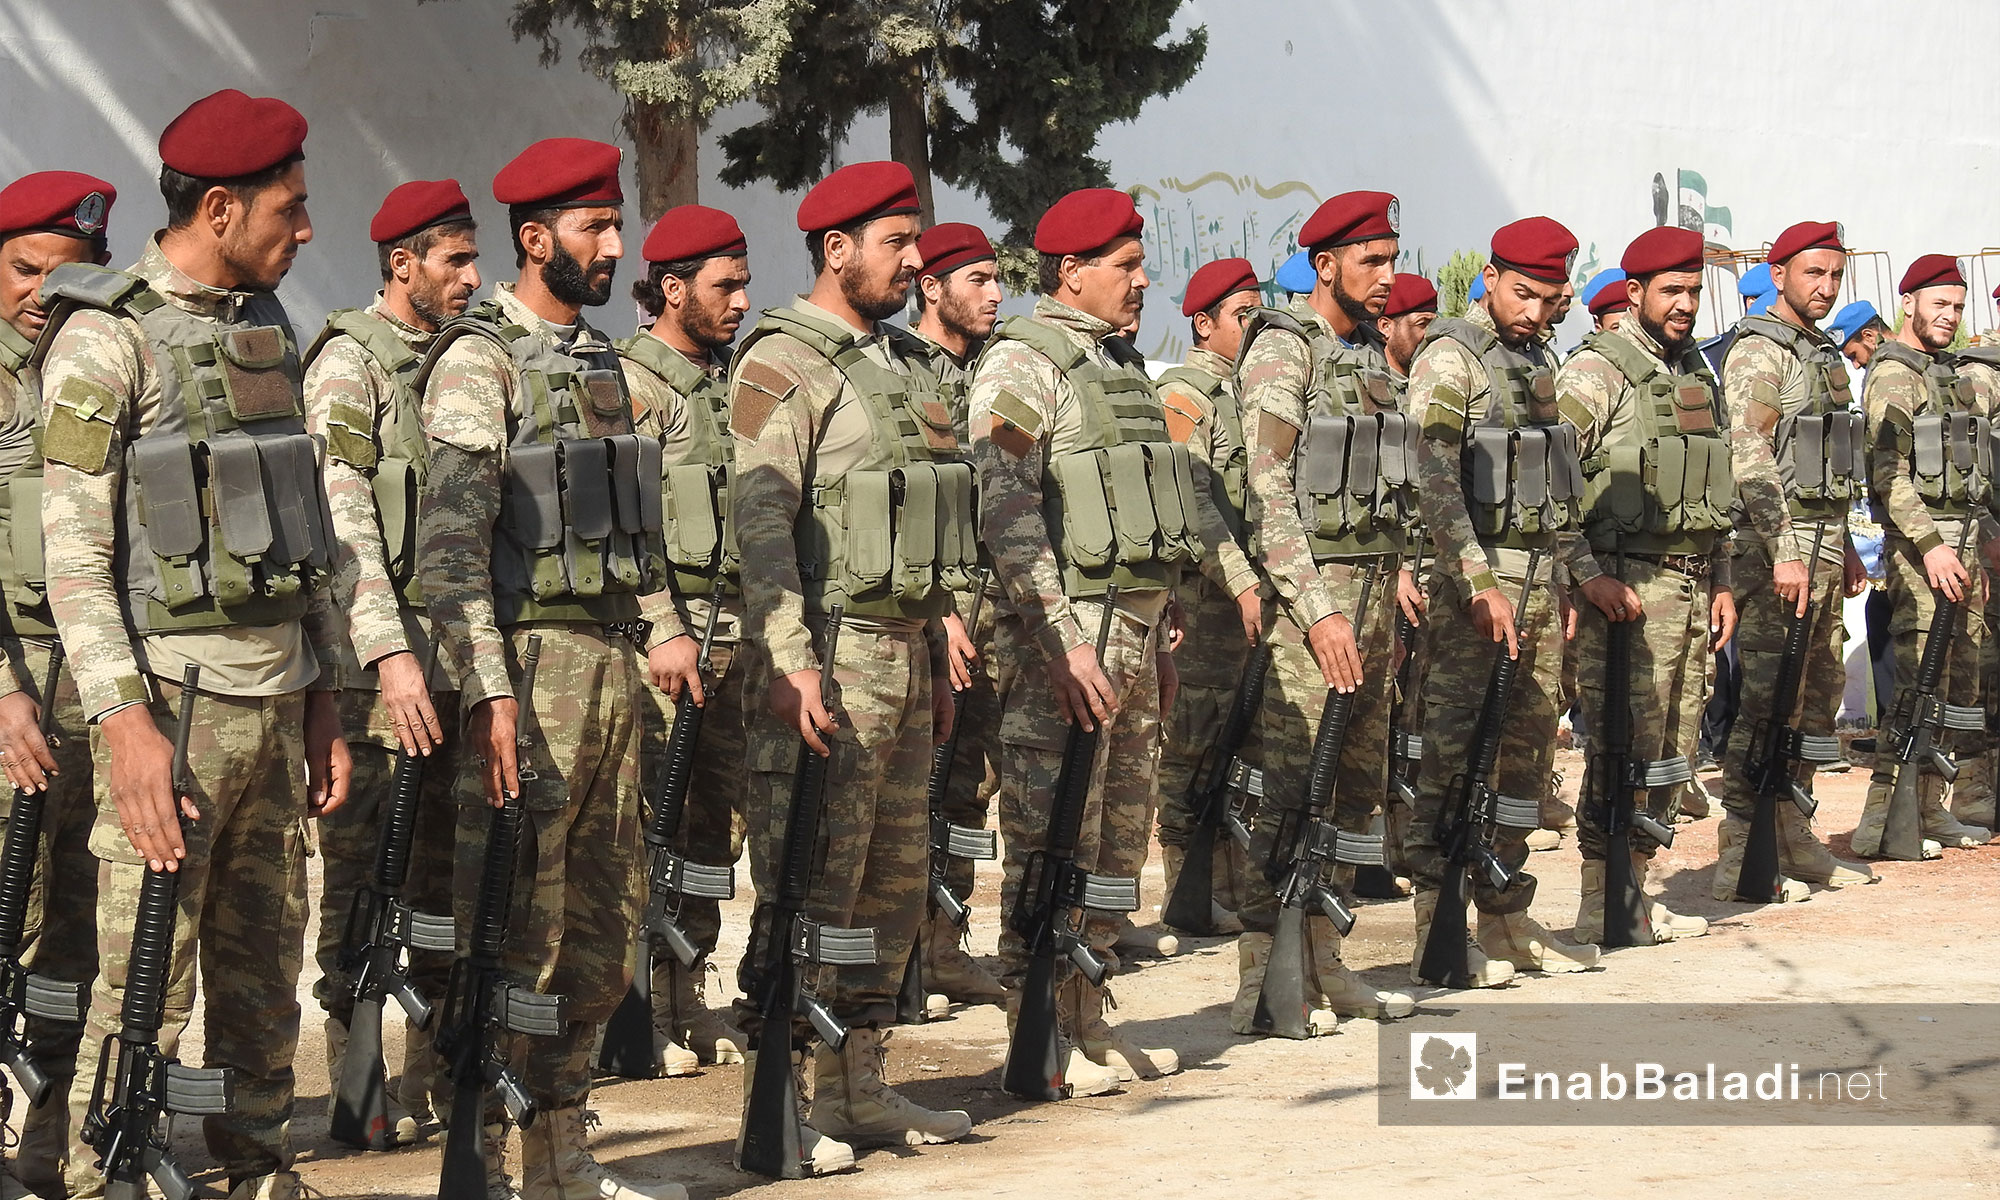 فرقة الحمزة تسلم كليتها العسكرية الى وزارة الدفاع التابعة للحكومة السورية المؤقتة - ريف حلب الشمالي - 1 تشرين الثاني 2017 (عنب بلدي)